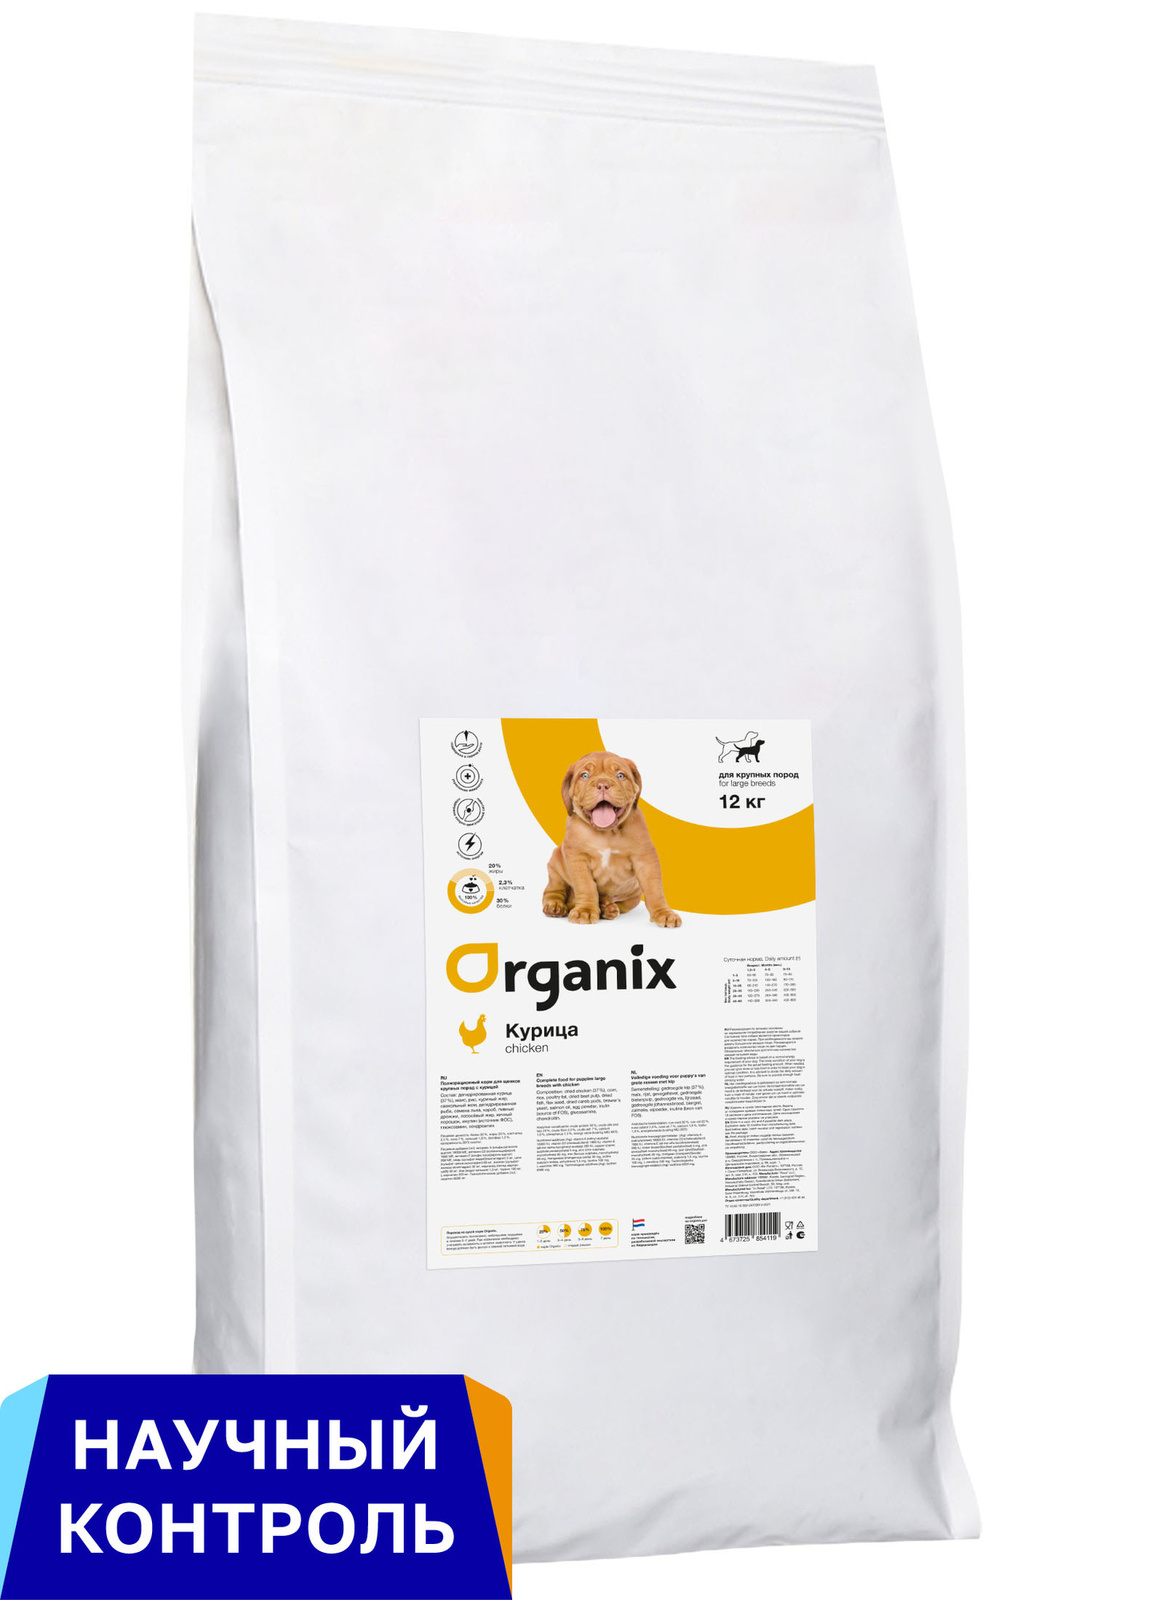 Organix Organix сухой корм для щенков крупных пород, с курицей (12 кг)